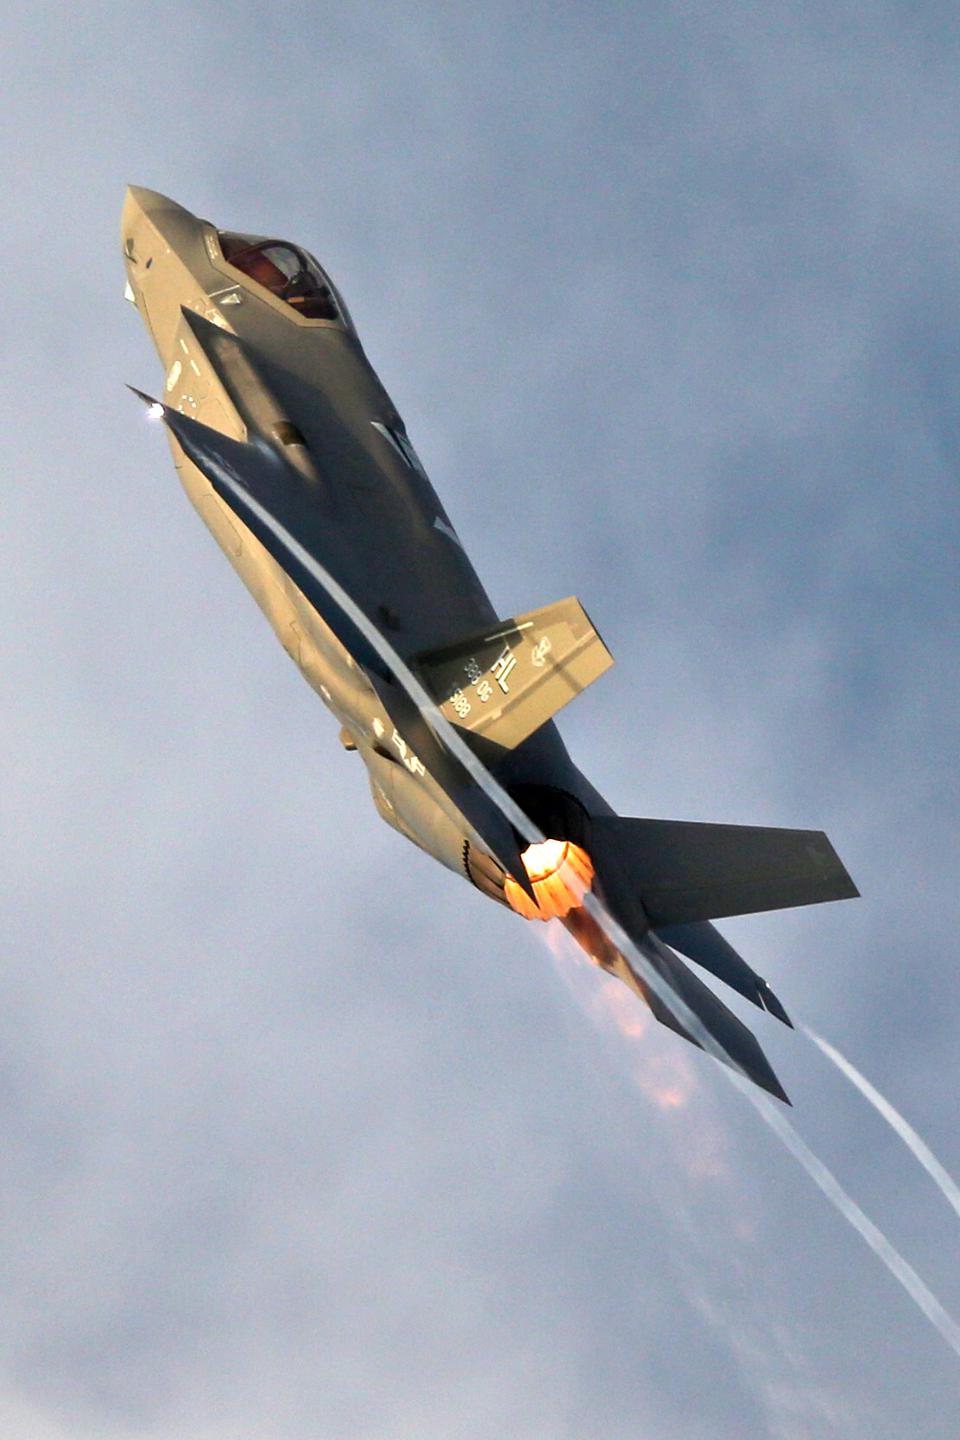 “فوربس”: لماذا تعارض “إسرائيل” استحواذ الإمارات على مقاتلات F-35 الأميركية؟